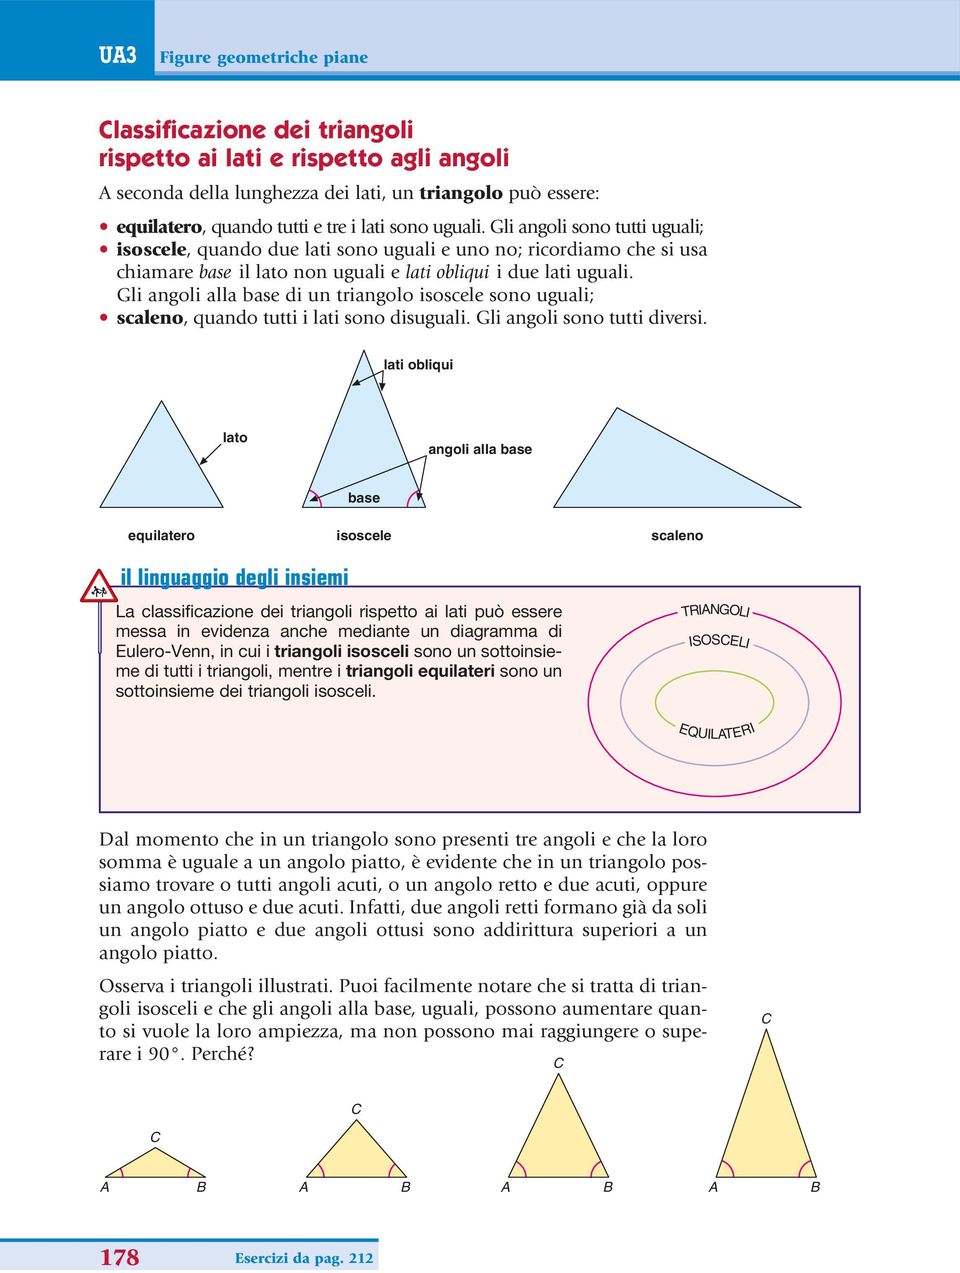 Gli angoli alla base di un triangolo isoscele sono uguali; scaleno, quando tutti i lati sono disuguali. Gli angoli sono tutti diversi.